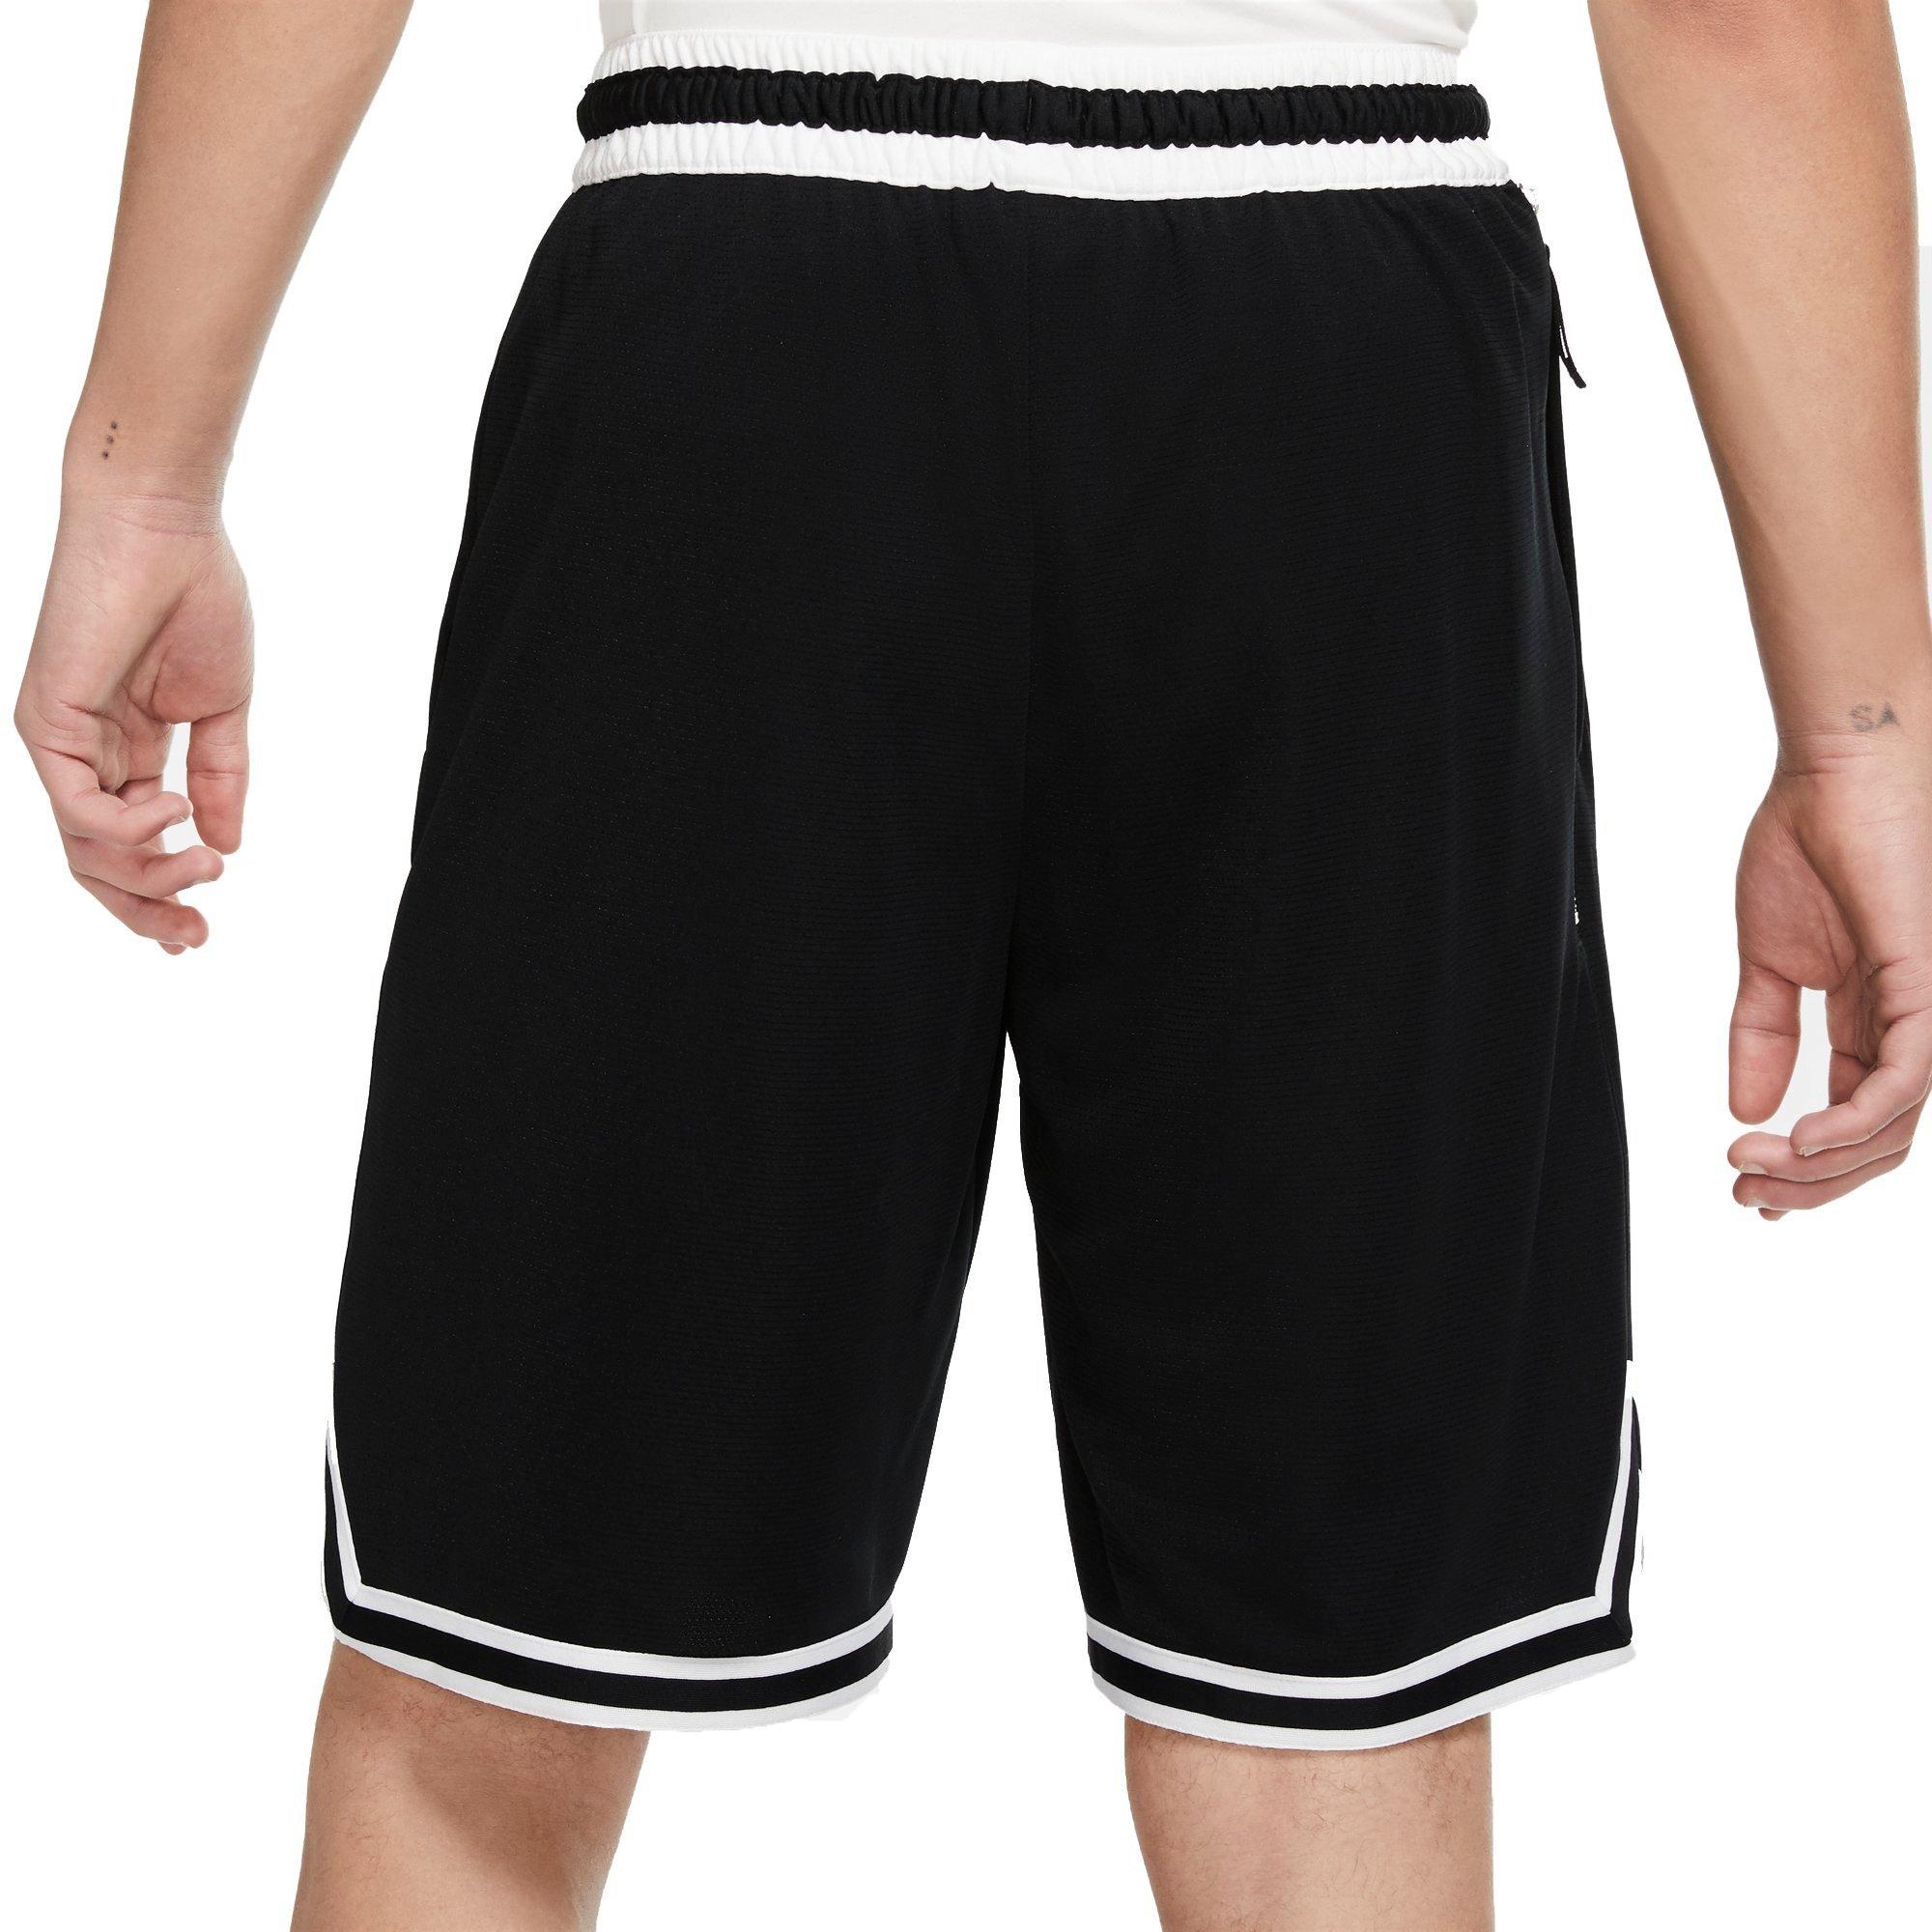 B Varsity Mesh Short Length Basketball Shorts